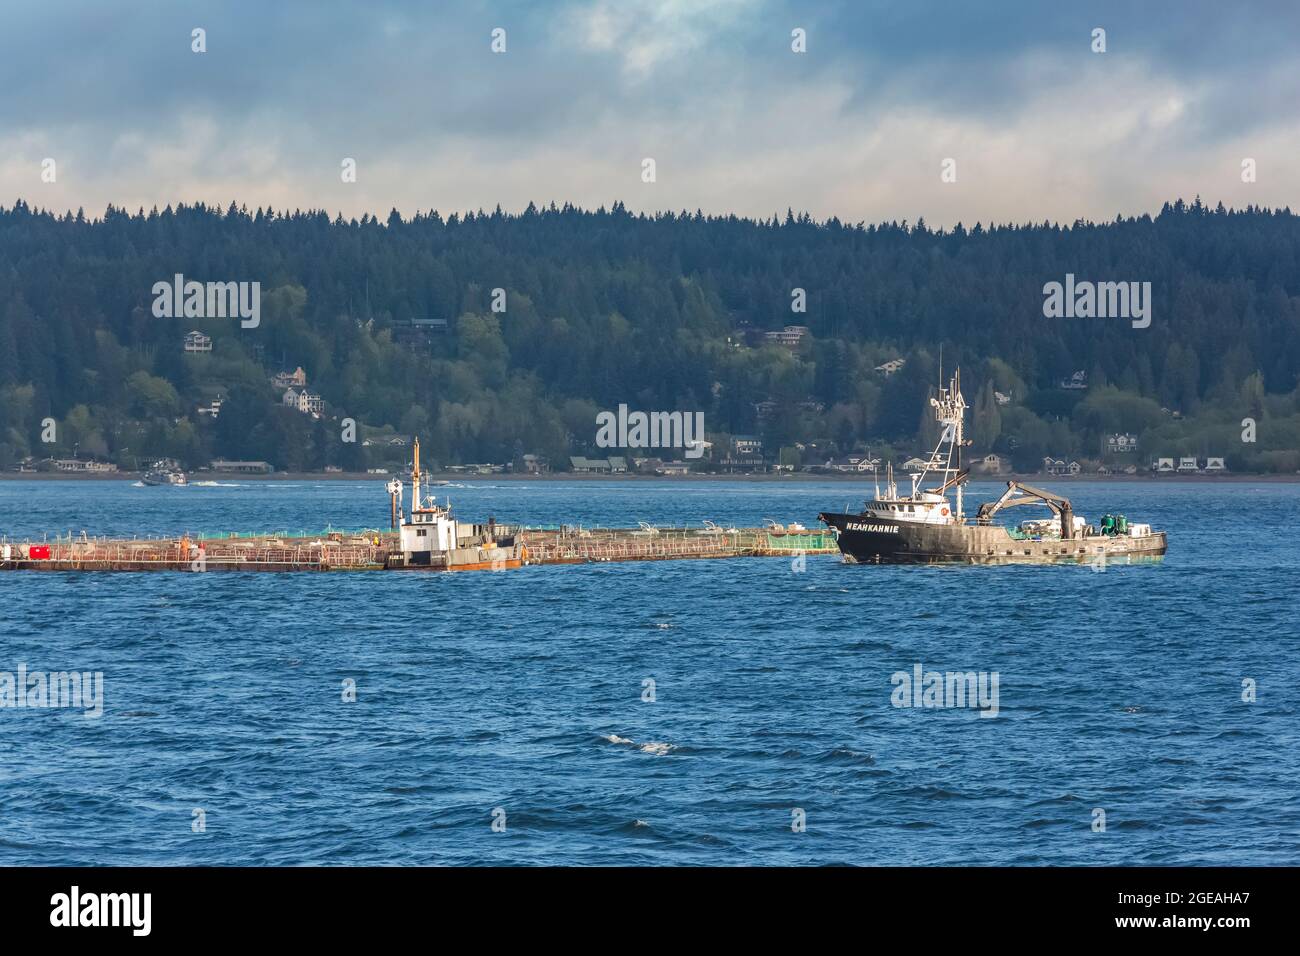 Das Boot namens Neahkohnie, das die Lachsfarm Icicle Seafoods vor Bainbridge Island, Washington State, USA, betreut [nur redaktionelle Lizenzierung] Stockfoto